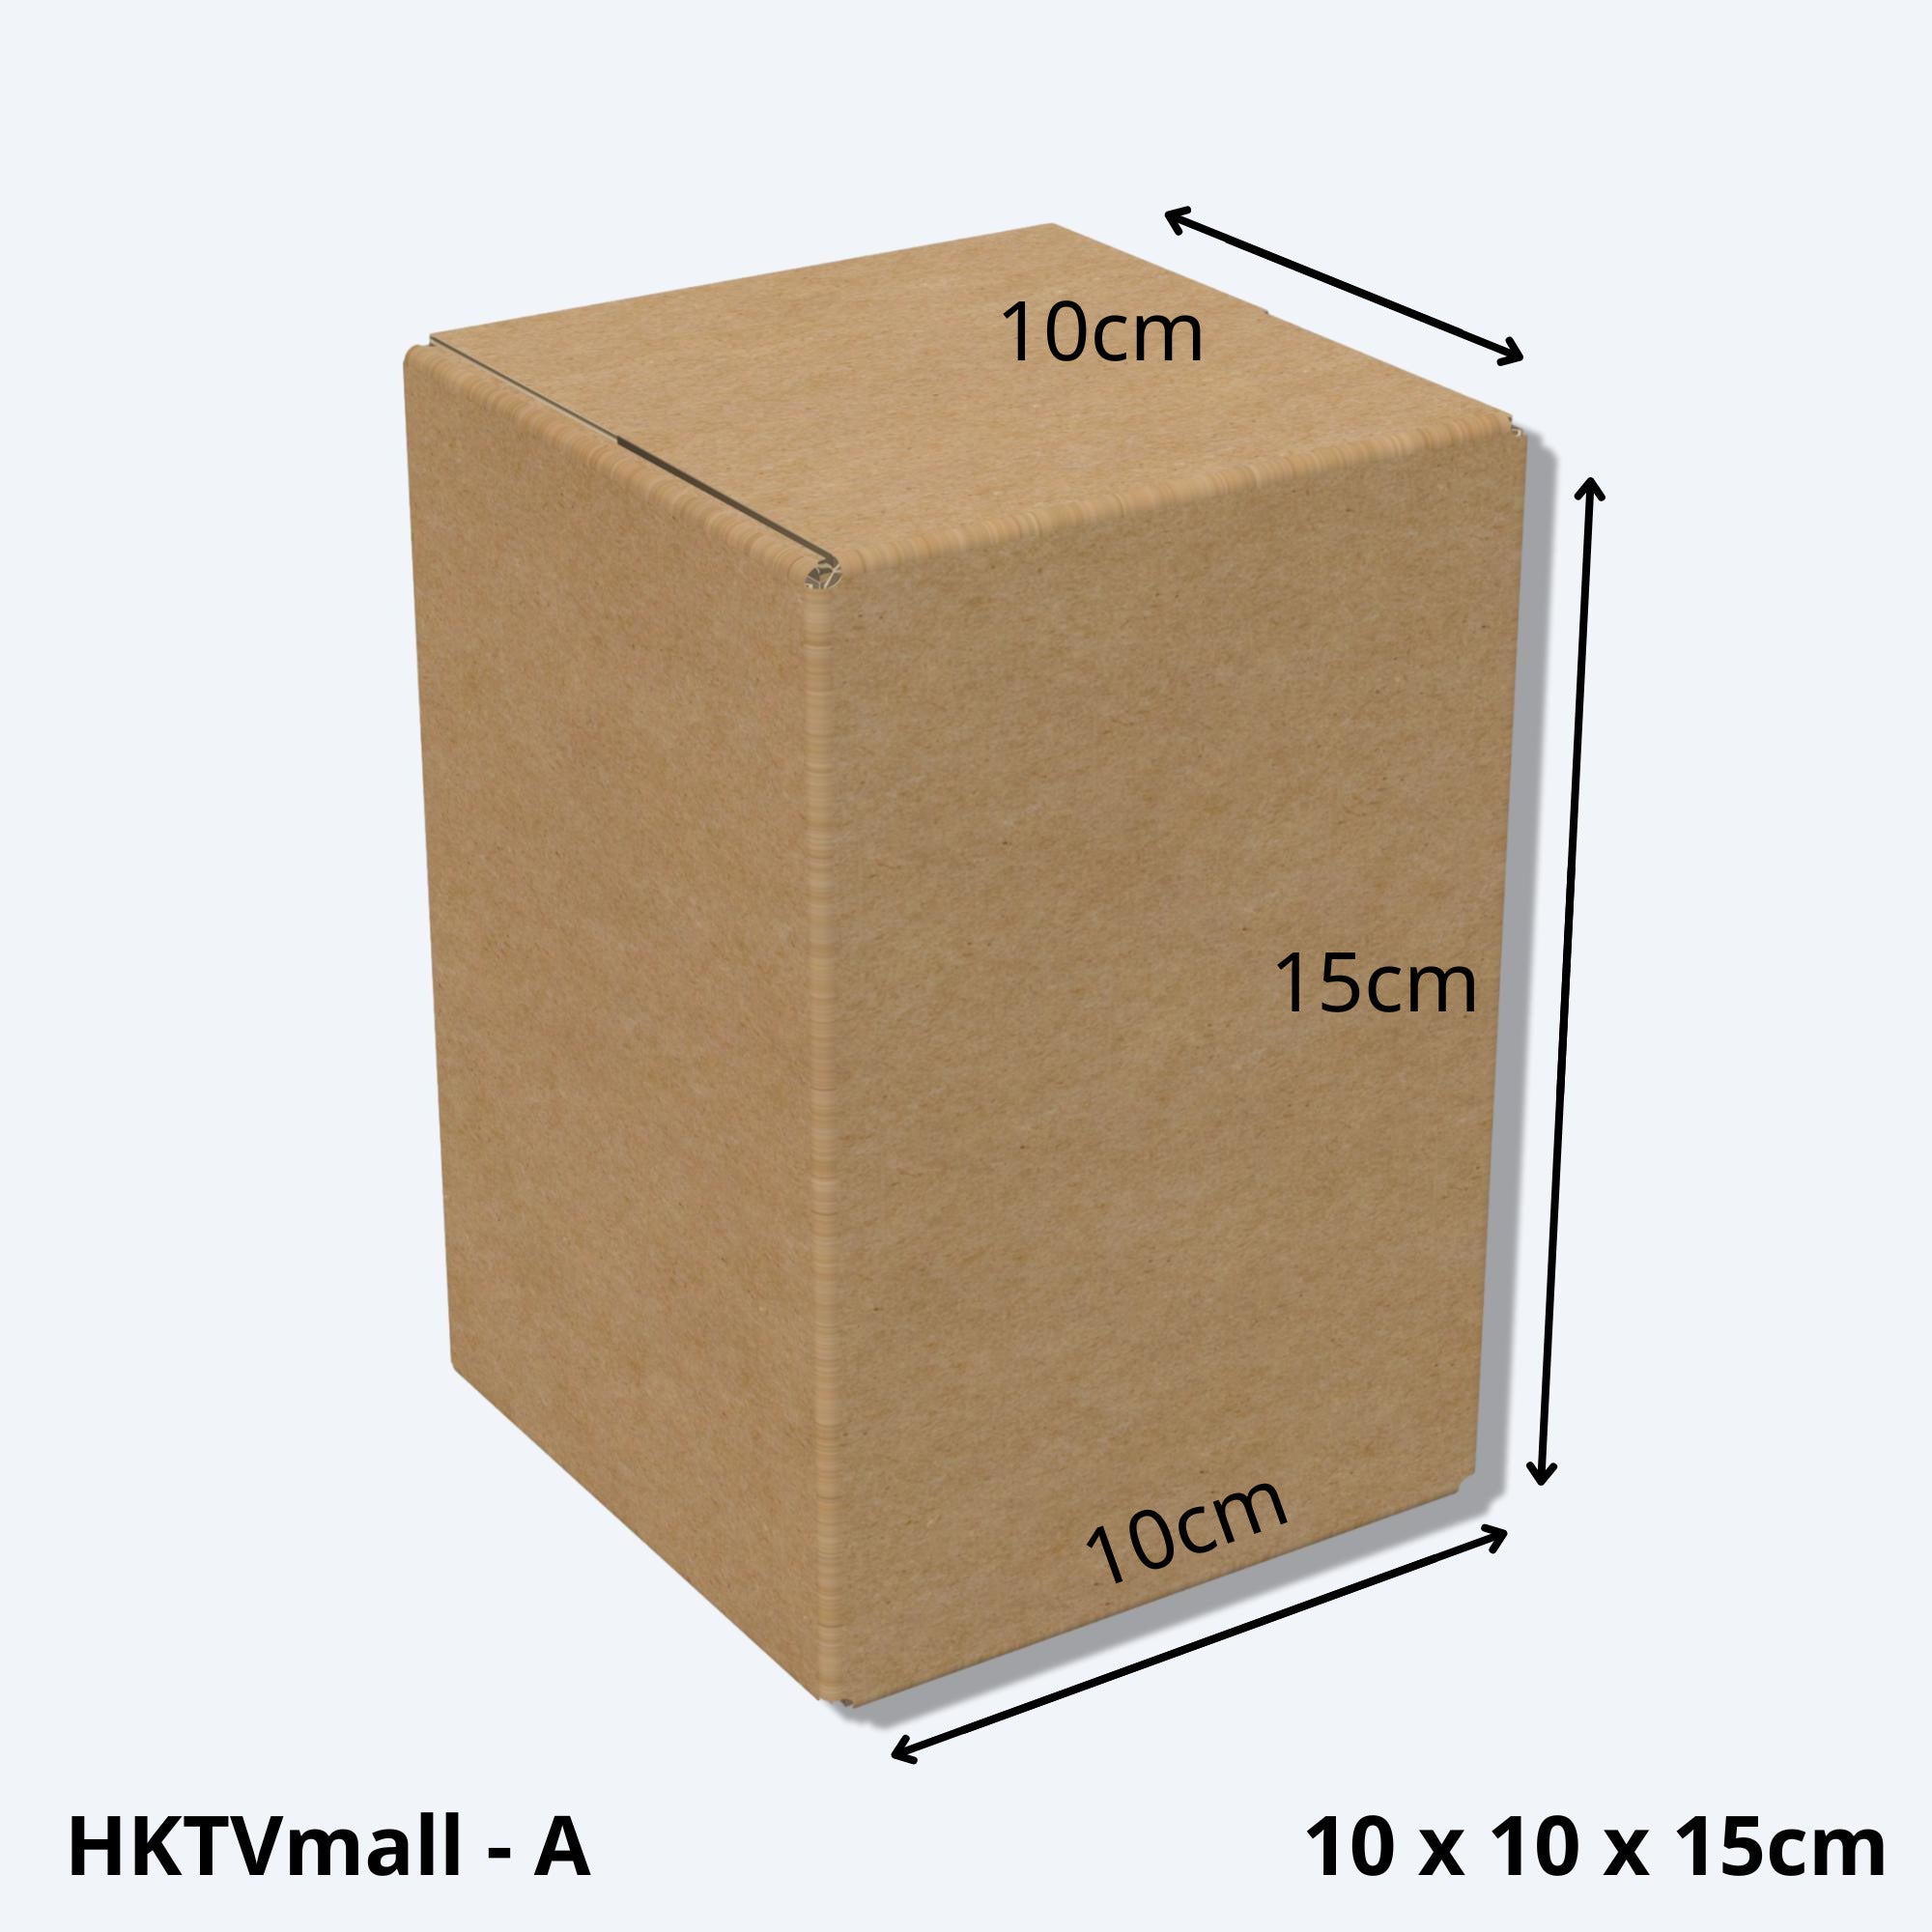 堅固的HKTVMALL尺寸A的紙箱尺寸圖，這款小型紙皮箱專為HKTV物流部設計，適用於HKTVmall商戶發貨時使用。